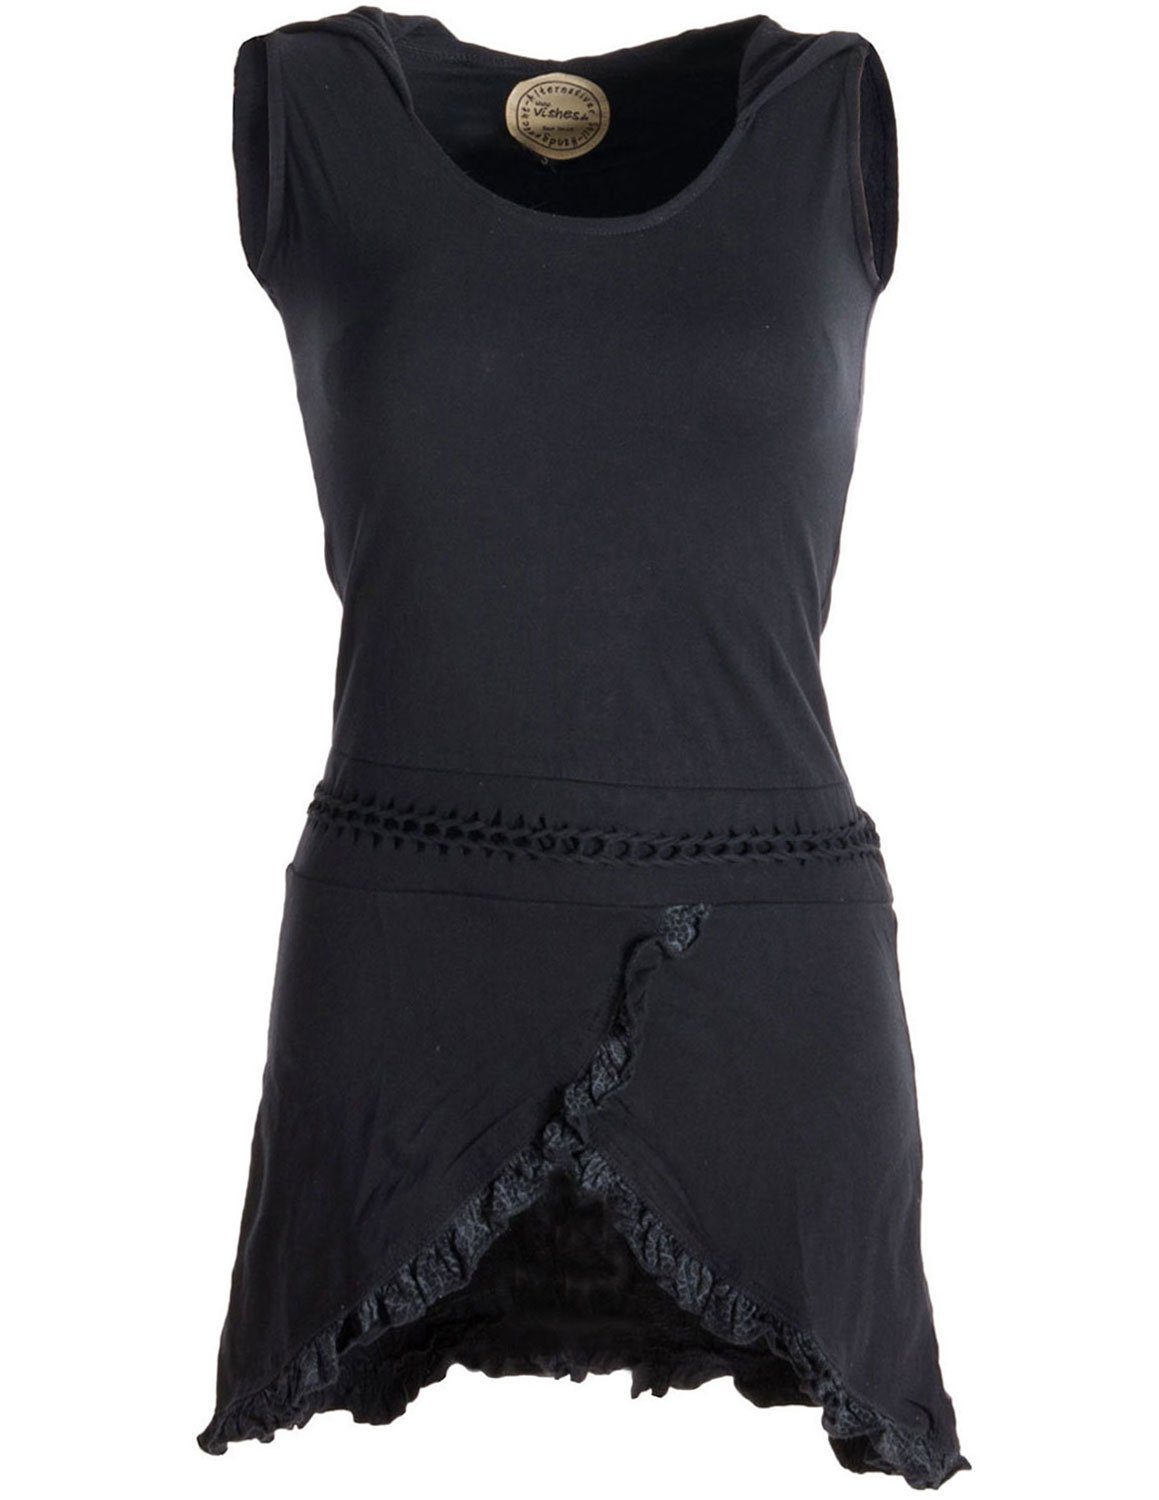 Vishes Zipfelkleid Asymmetrisches Lagenlook Baumwollkleid mit Rüschen, Flechtwerk und Zipfelkapuze schwarz